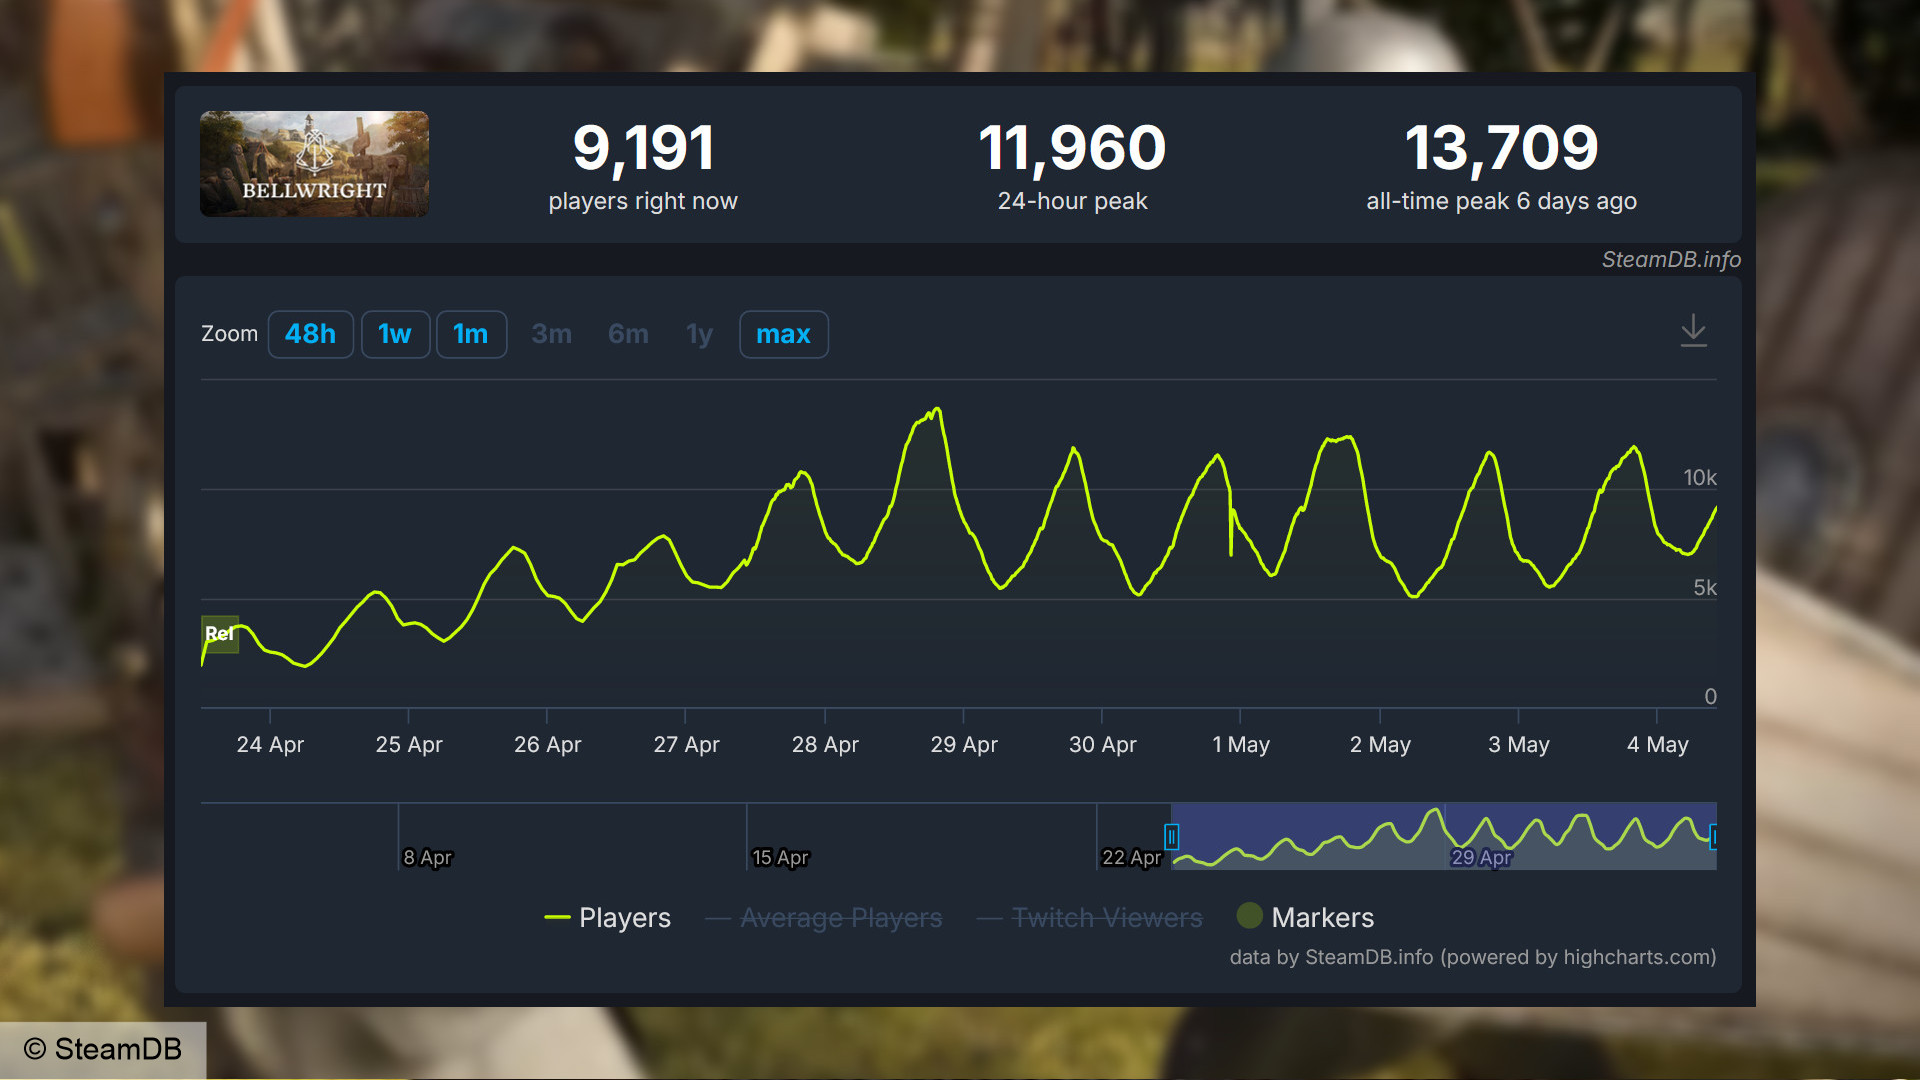 Bellwright Steam-Spielerzahl – Daten von SteamDB zeigen einen Anstieg im Laufe der Zeit auf konstante Spielerzahlen von über 11.000 gleichzeitigen Spielern.